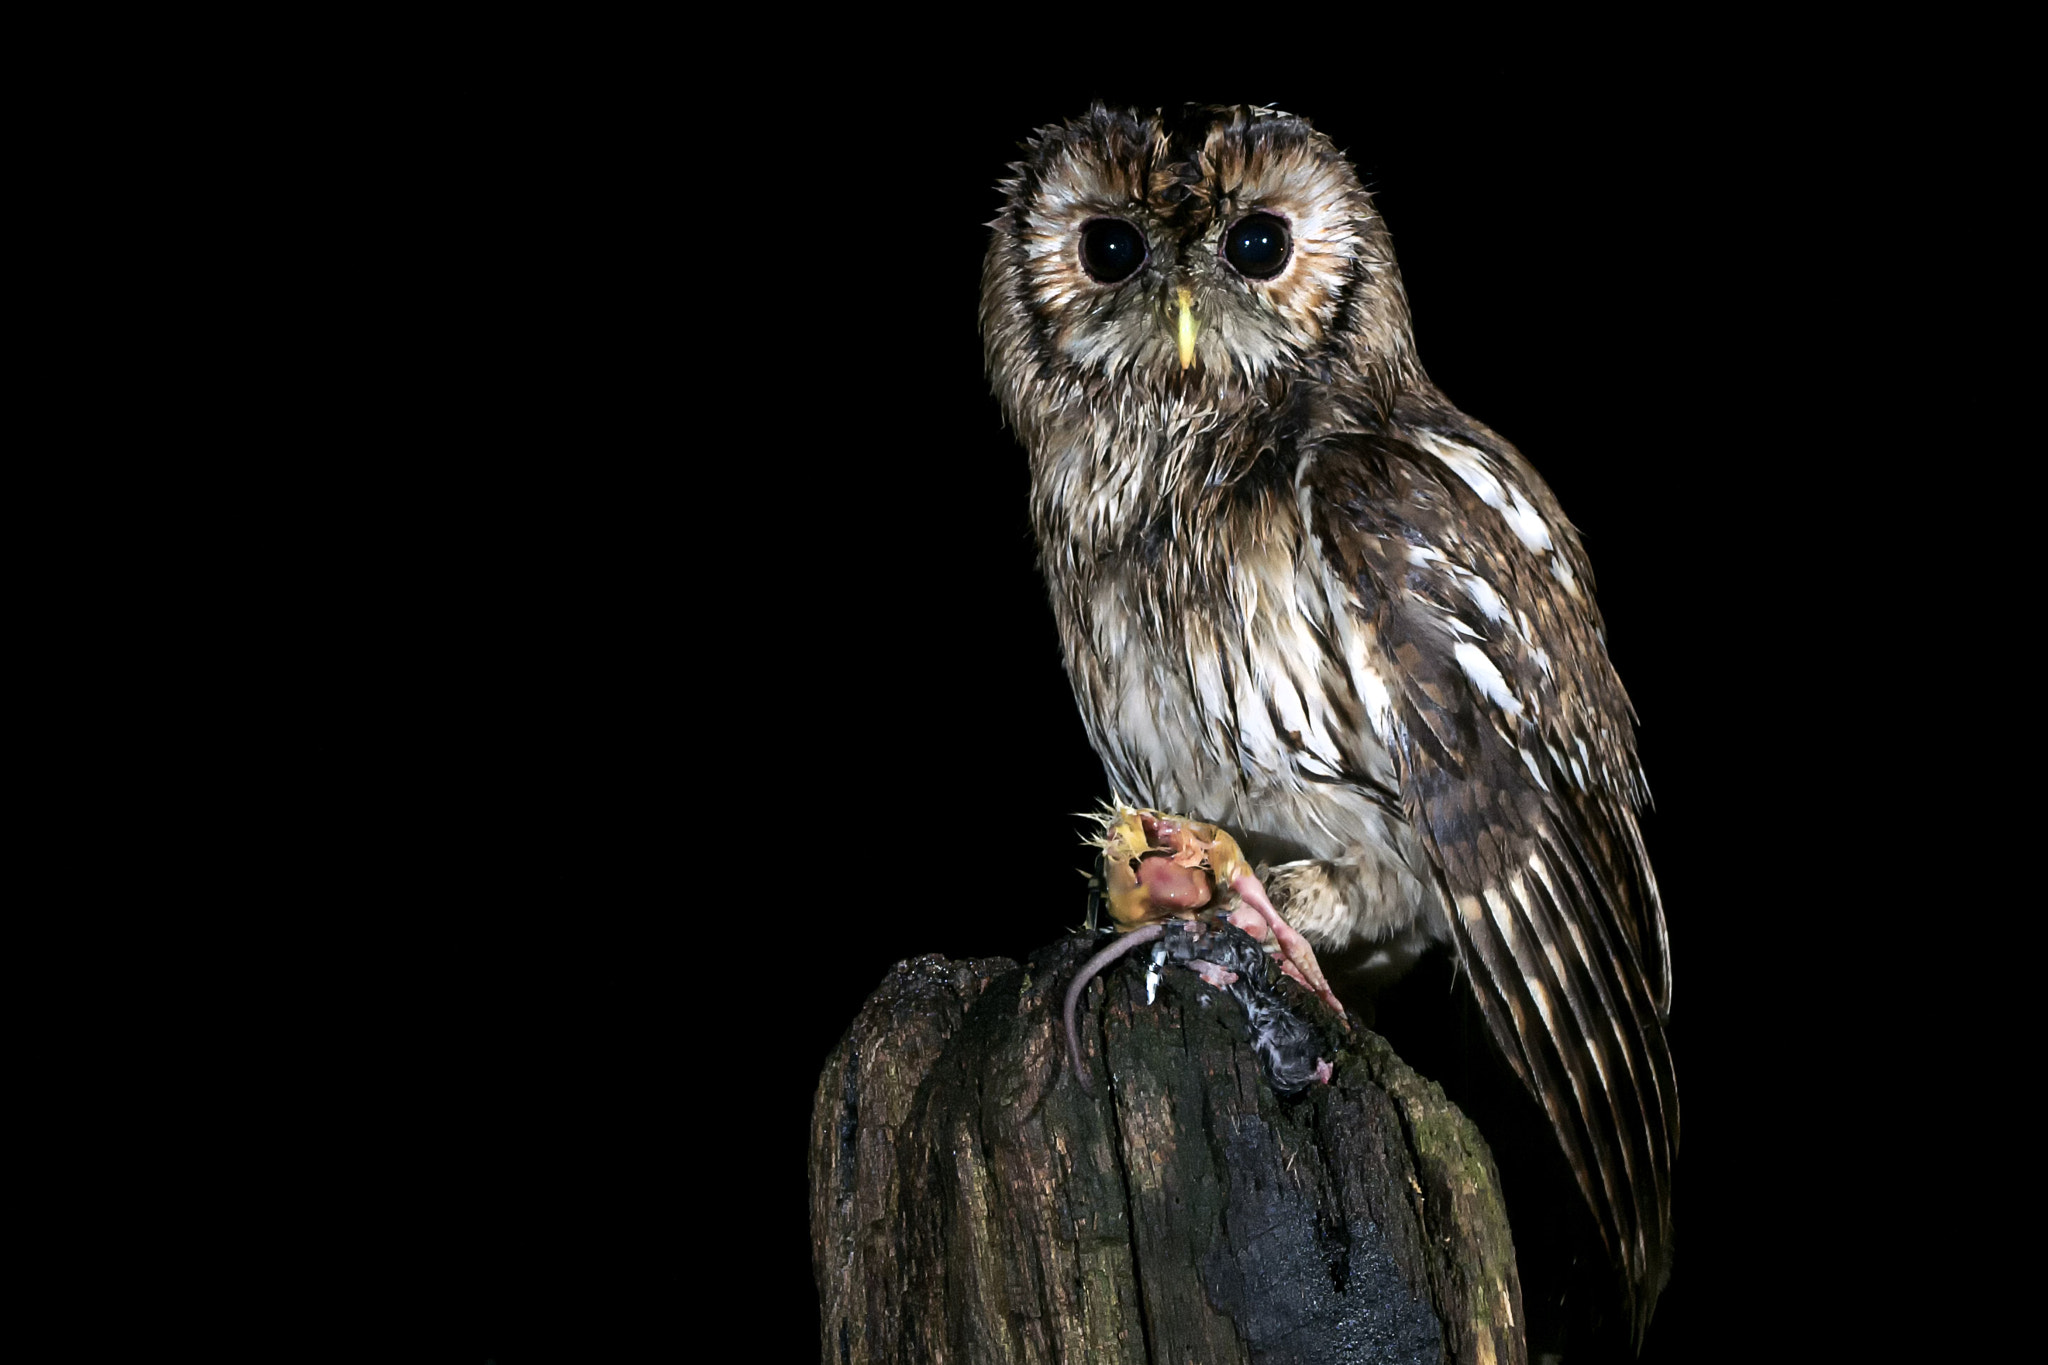 Sony ILCA-77M2 sample photo. Tawny owl © bob riach photography